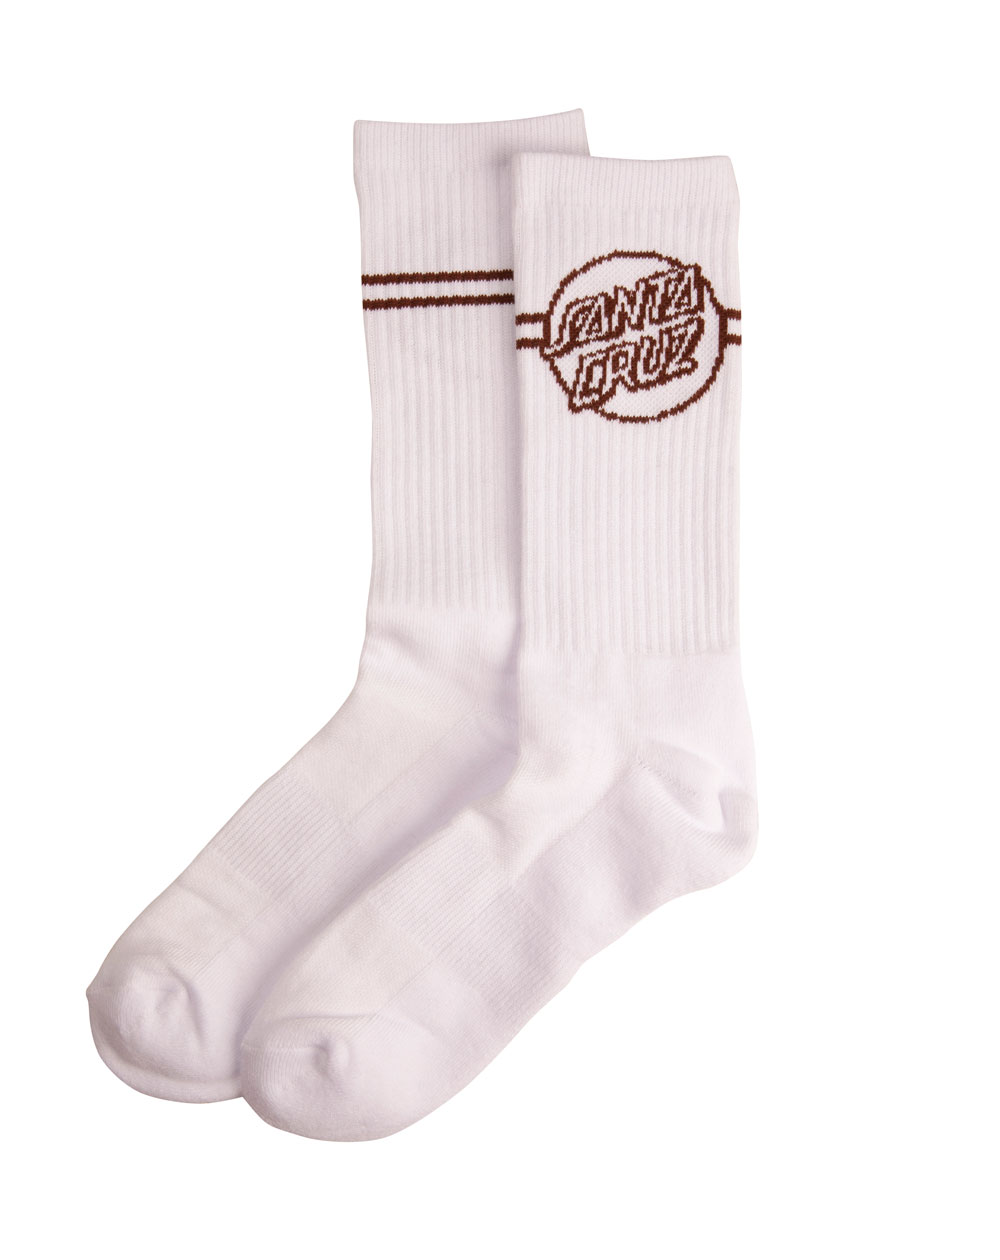 Santa Cruz Men's Socks Opus Dot Stripe White/Sepia